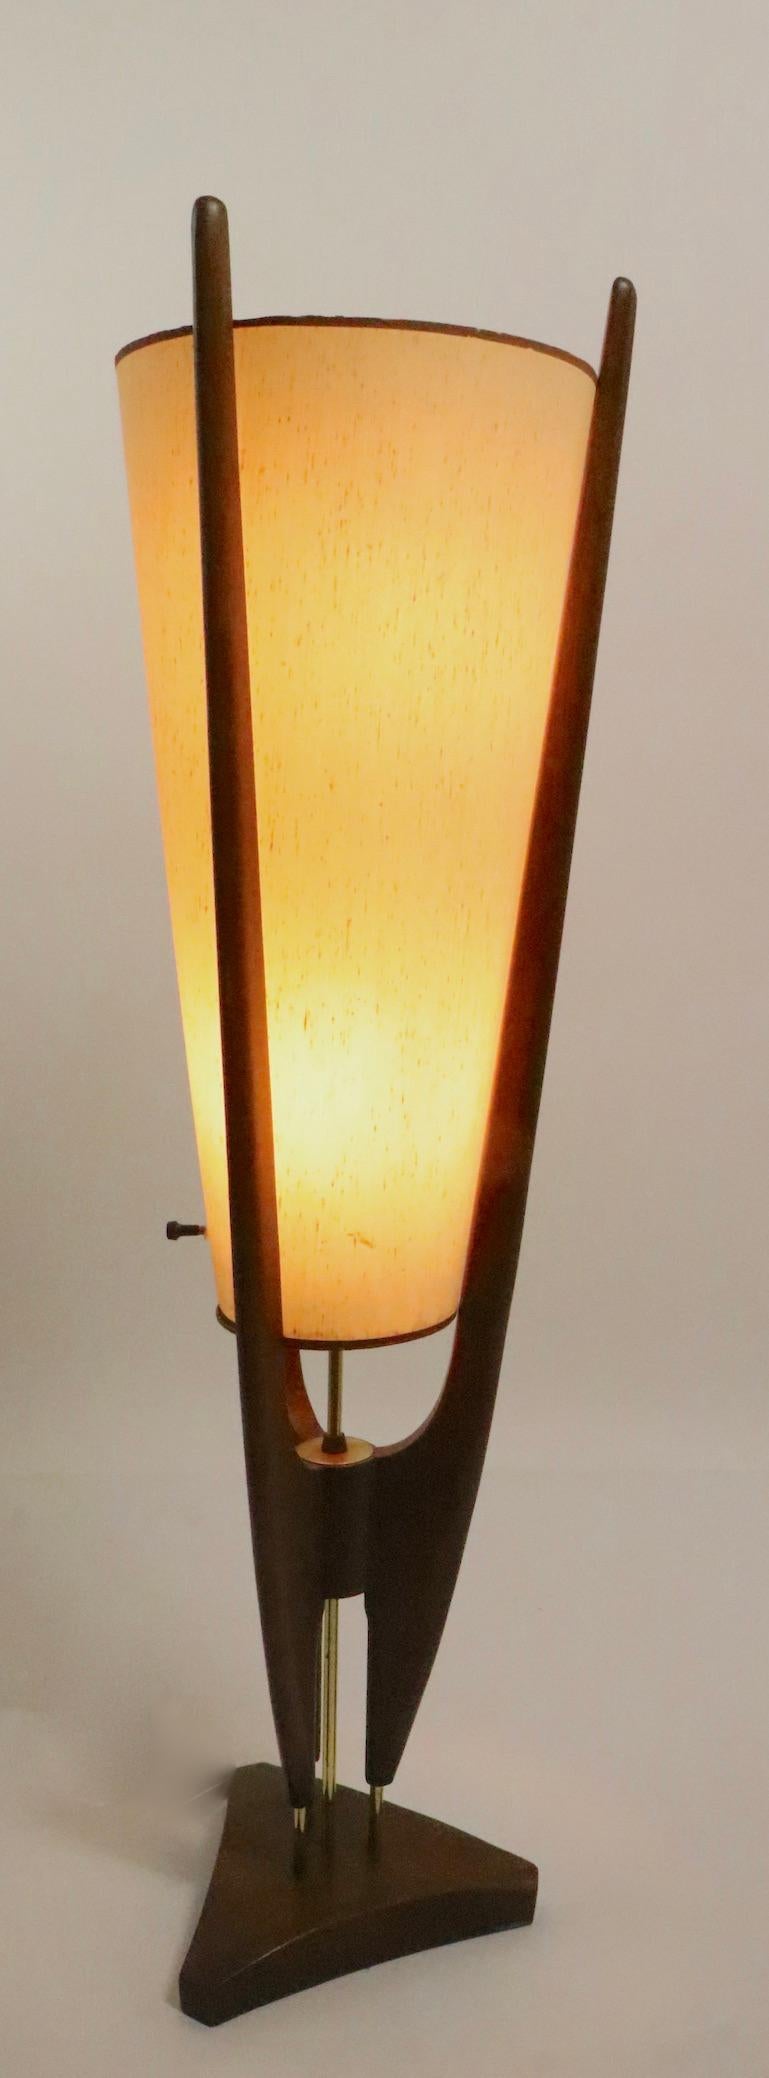 Walnut Mid Century  Lamp by John Keal for Modeline